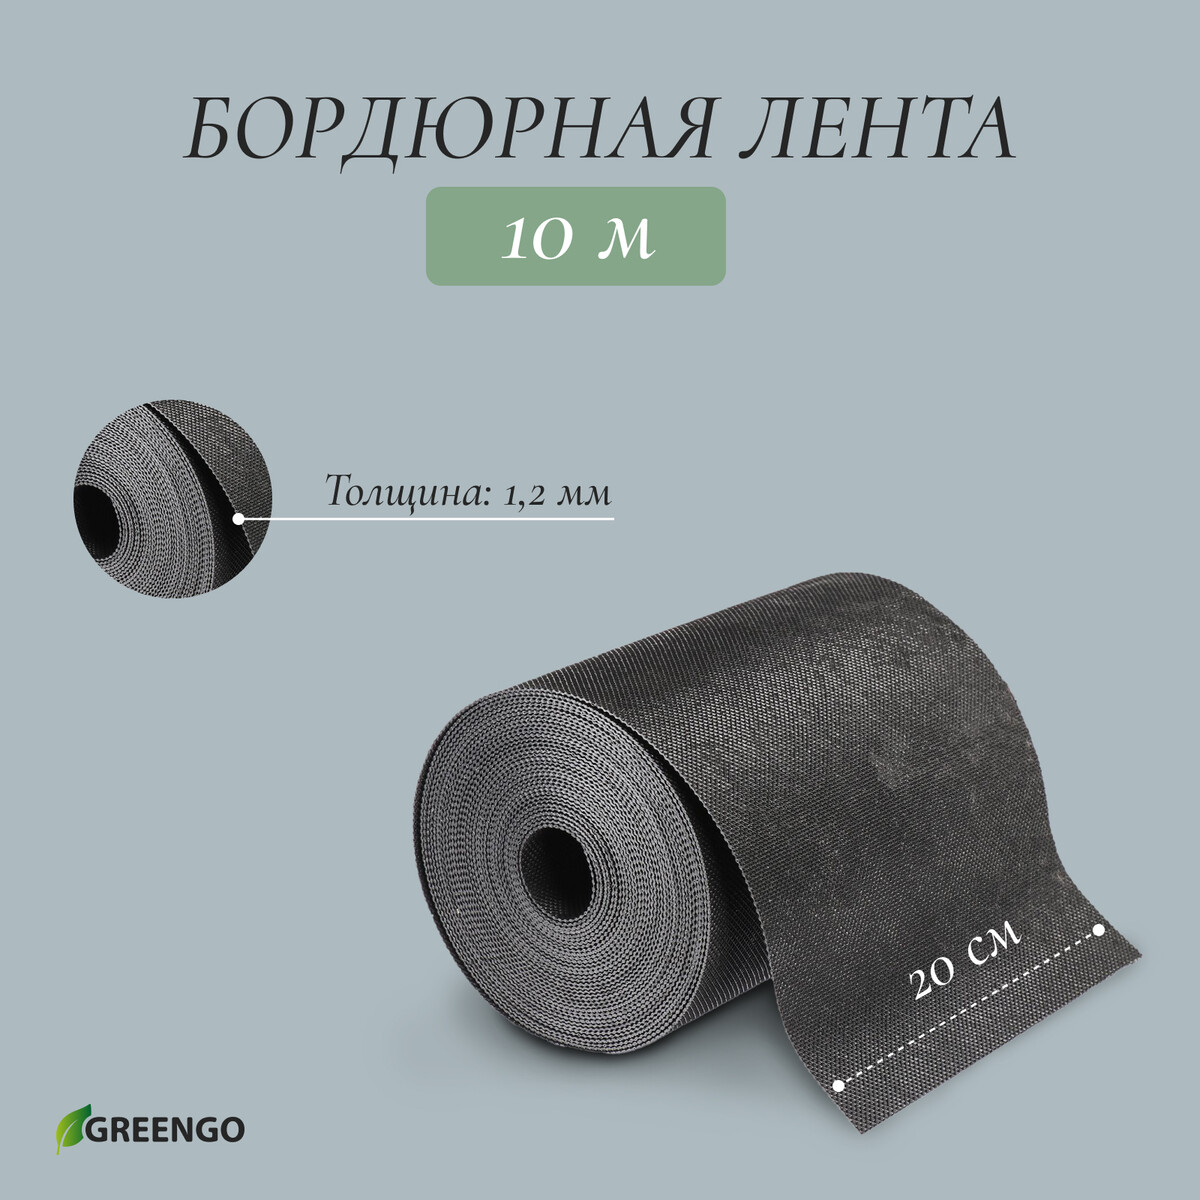 Лента бордюрная, 0.2 × 10 м, толщина 1.2 мм, пластиковая, черная, greengo лента бордюрная 0 3 × 10 м толщина 1 2 мм пластиковая коричневая greengo